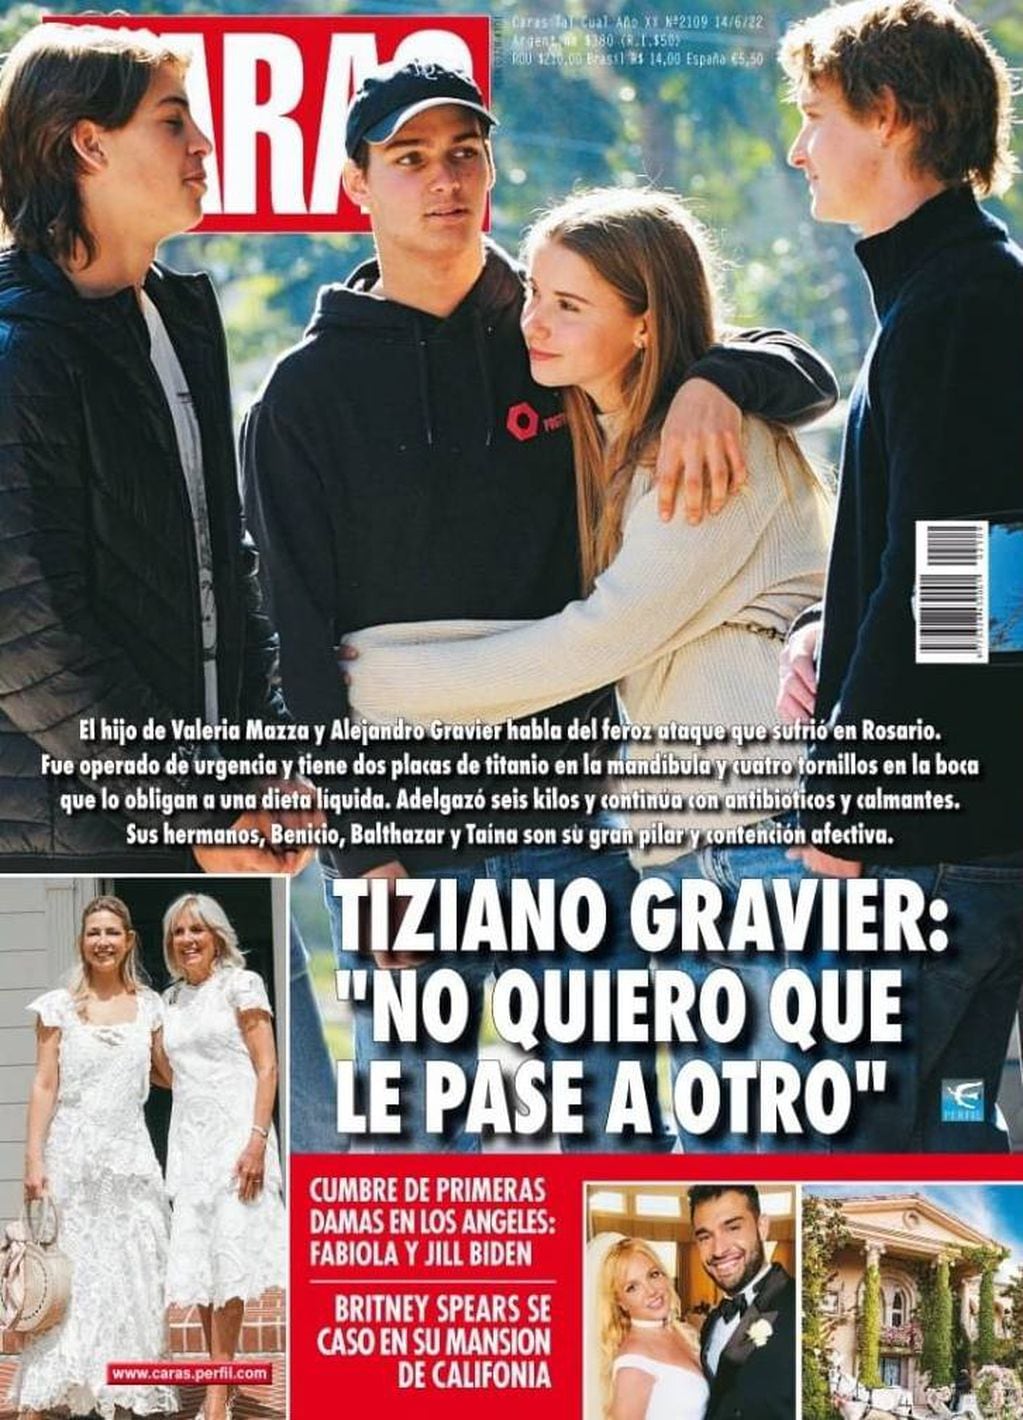 El hijo de la modelo y Alejandro Gravier se refirió al incidente ocurrido el domingo 5 de junio frente a una disco cercana al barrio Pichincha.